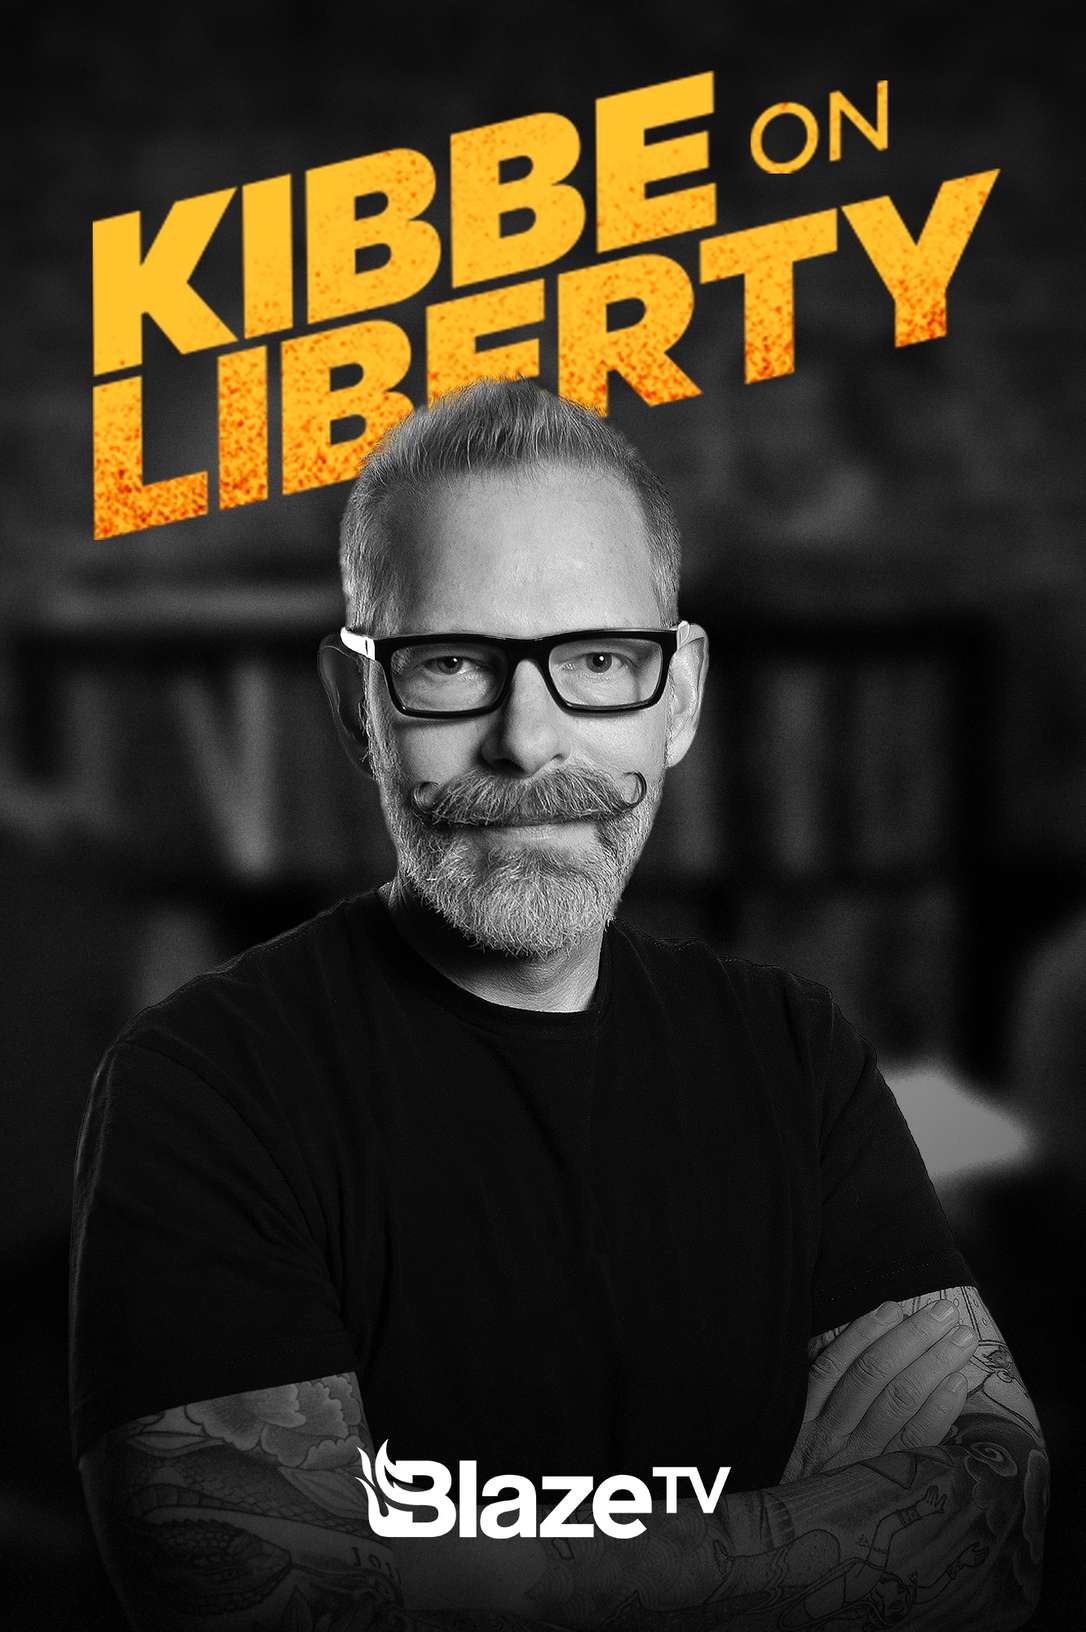 Kibbe On Liberty on BlazeTV